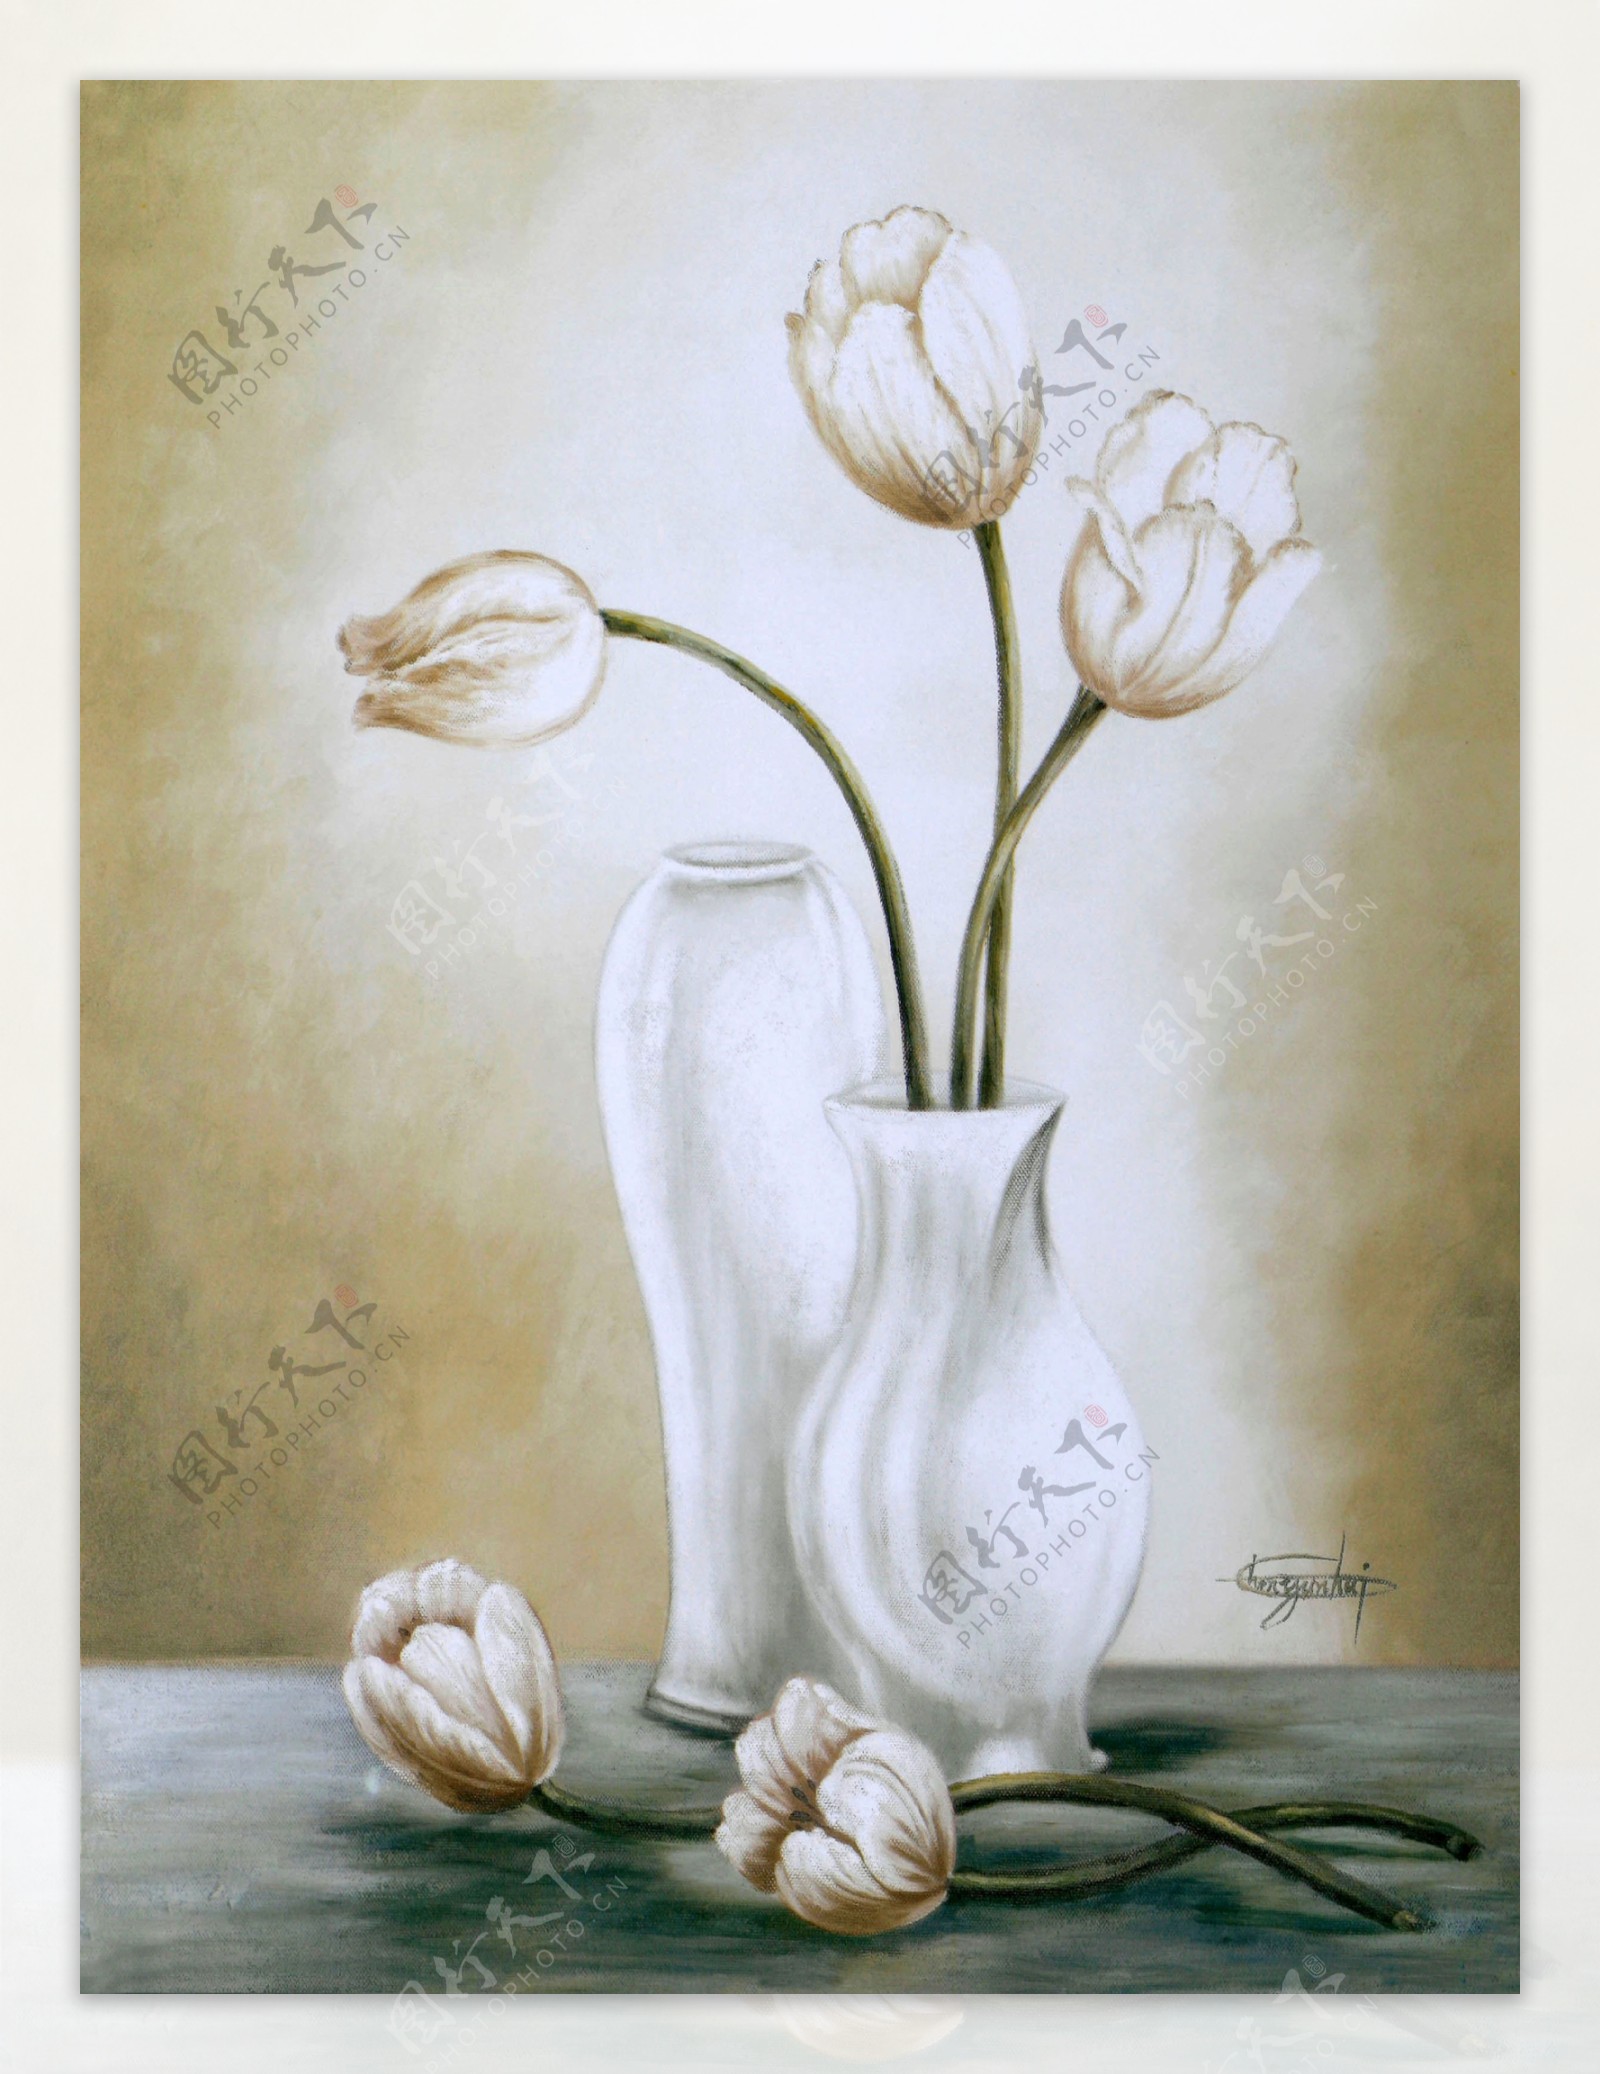 白色花瓶鲜花油画